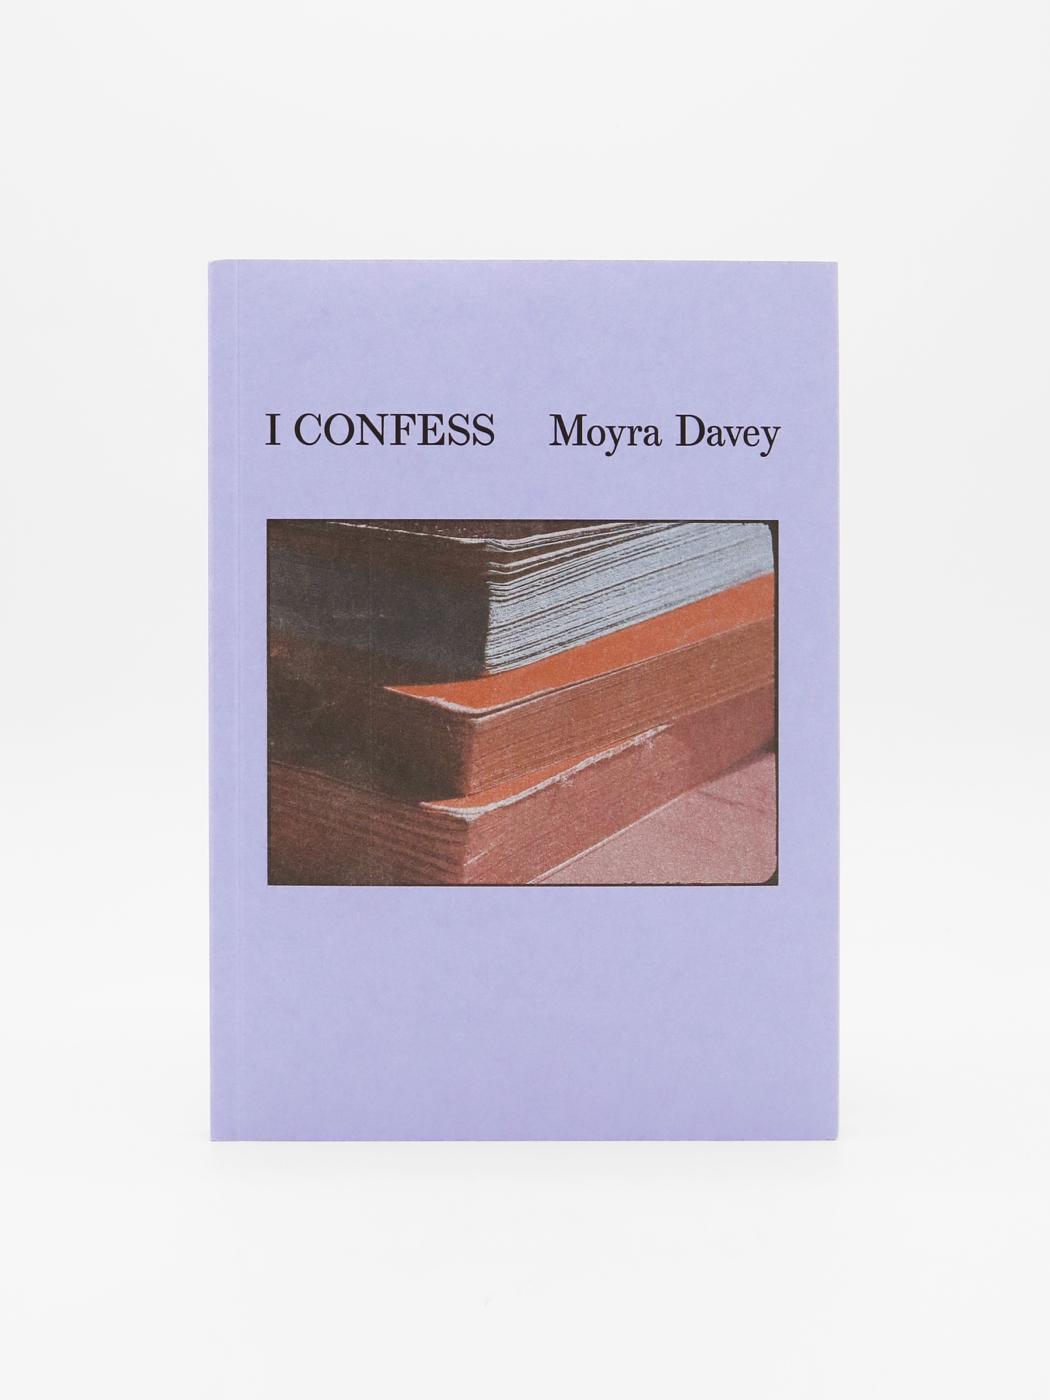 Moyra Davey, I Confess